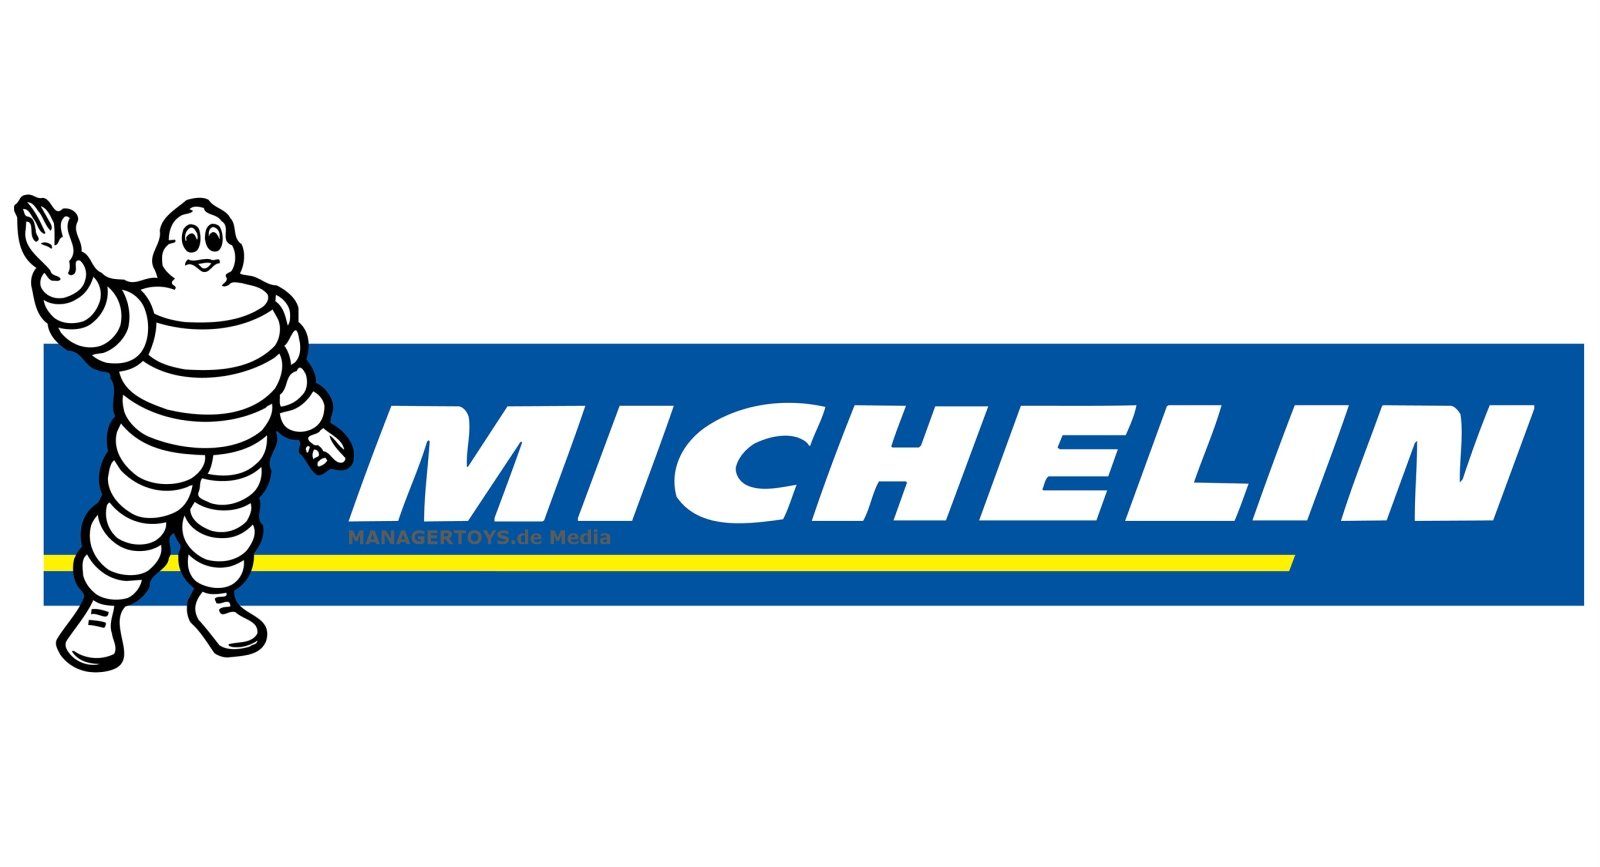 Michelin MJS80 Auto Starter Starthilfegerät Ladegerät Powerbank 8000 mAh Jump Akku